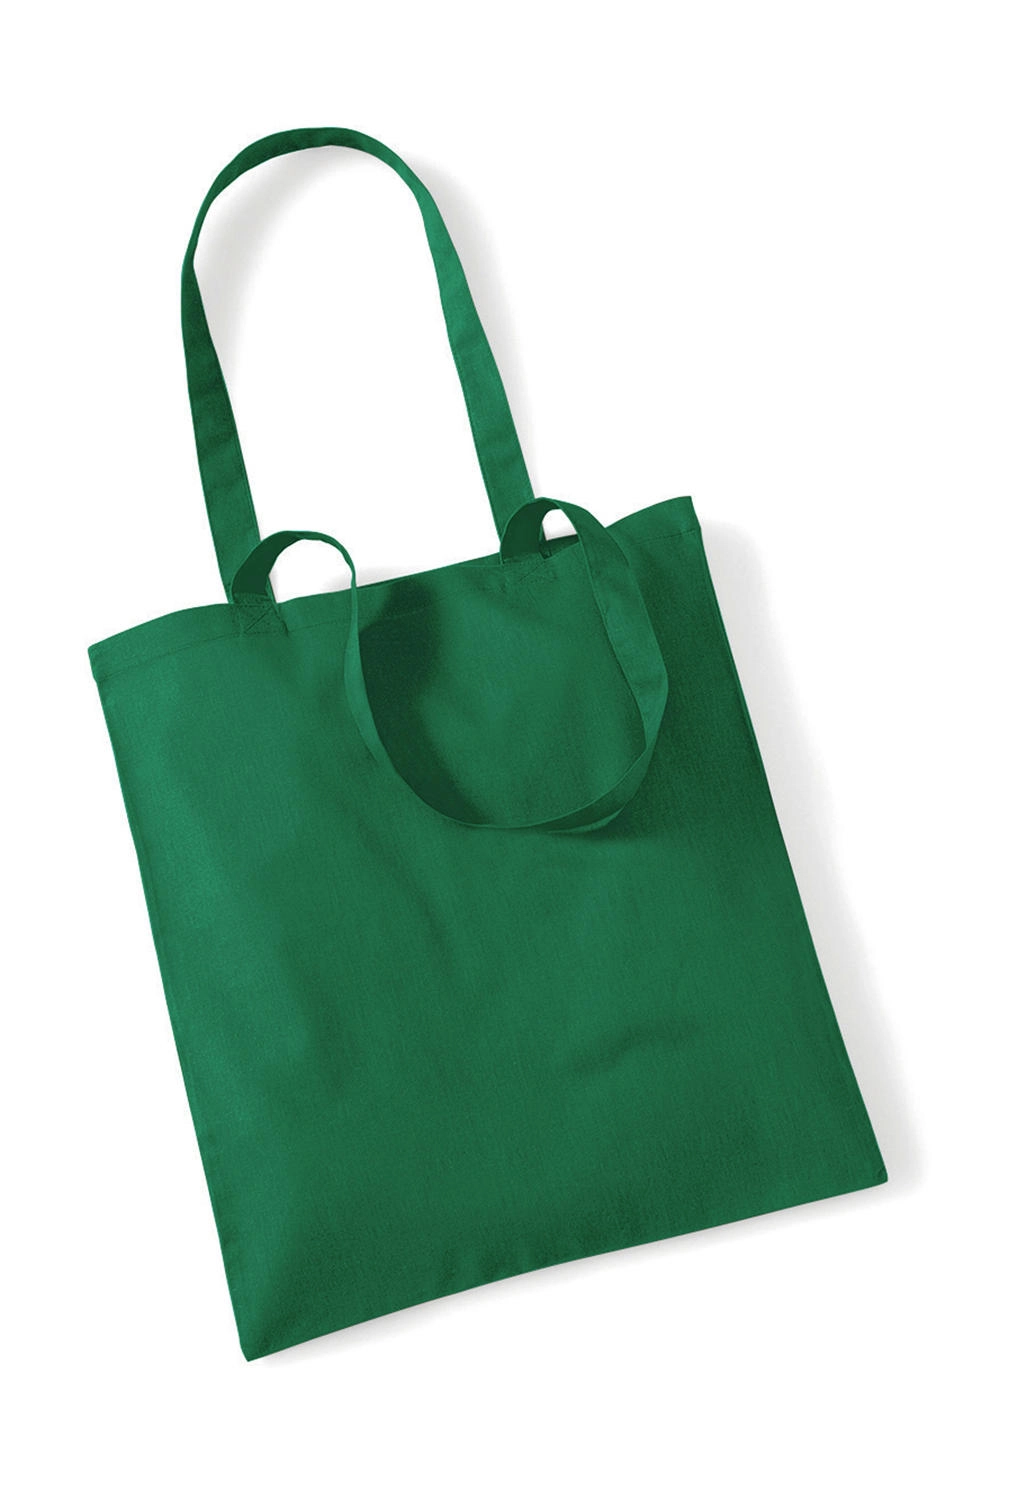 Bag for Life - Long Handles zum Besticken und Bedrucken in der Farbe Kelly Green mit Ihren Logo, Schriftzug oder Motiv.